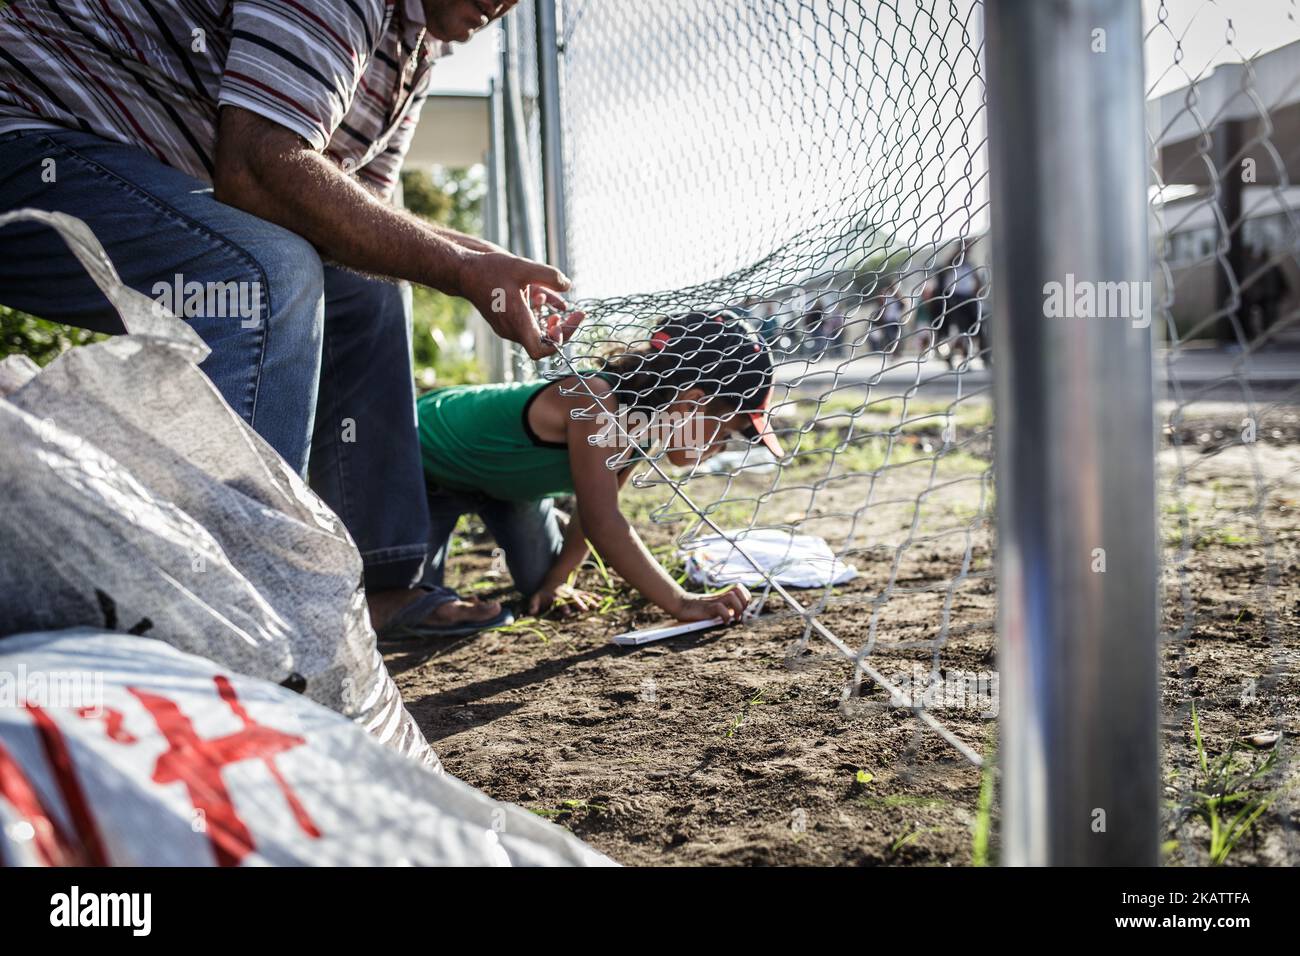 (9/14/2015) Serbia, Horgos. Los migrantes cruzan cerca cableada poco después de cerrar la frontera húngara. Hungría ha sido un importante país de tránsito para los migrantes, muchos de los cuales apuntan a continuar hacia Austria y Alemania. En 2015, Hungría construyó una barrera fronteriza en su frontera con Serbia y Croacia. La valla se construyó durante la crisis de los inmigrantes europeos con el objetivo de garantizar la seguridad fronteriza evitando que los refugiados y los inmigrantes entren ilegalmente, y permitiendo la opción de entrar a través de los puestos de control oficiales y solicitar asilo en Hungría, de conformidad con la legislación internacional y europea. El número Foto de stock